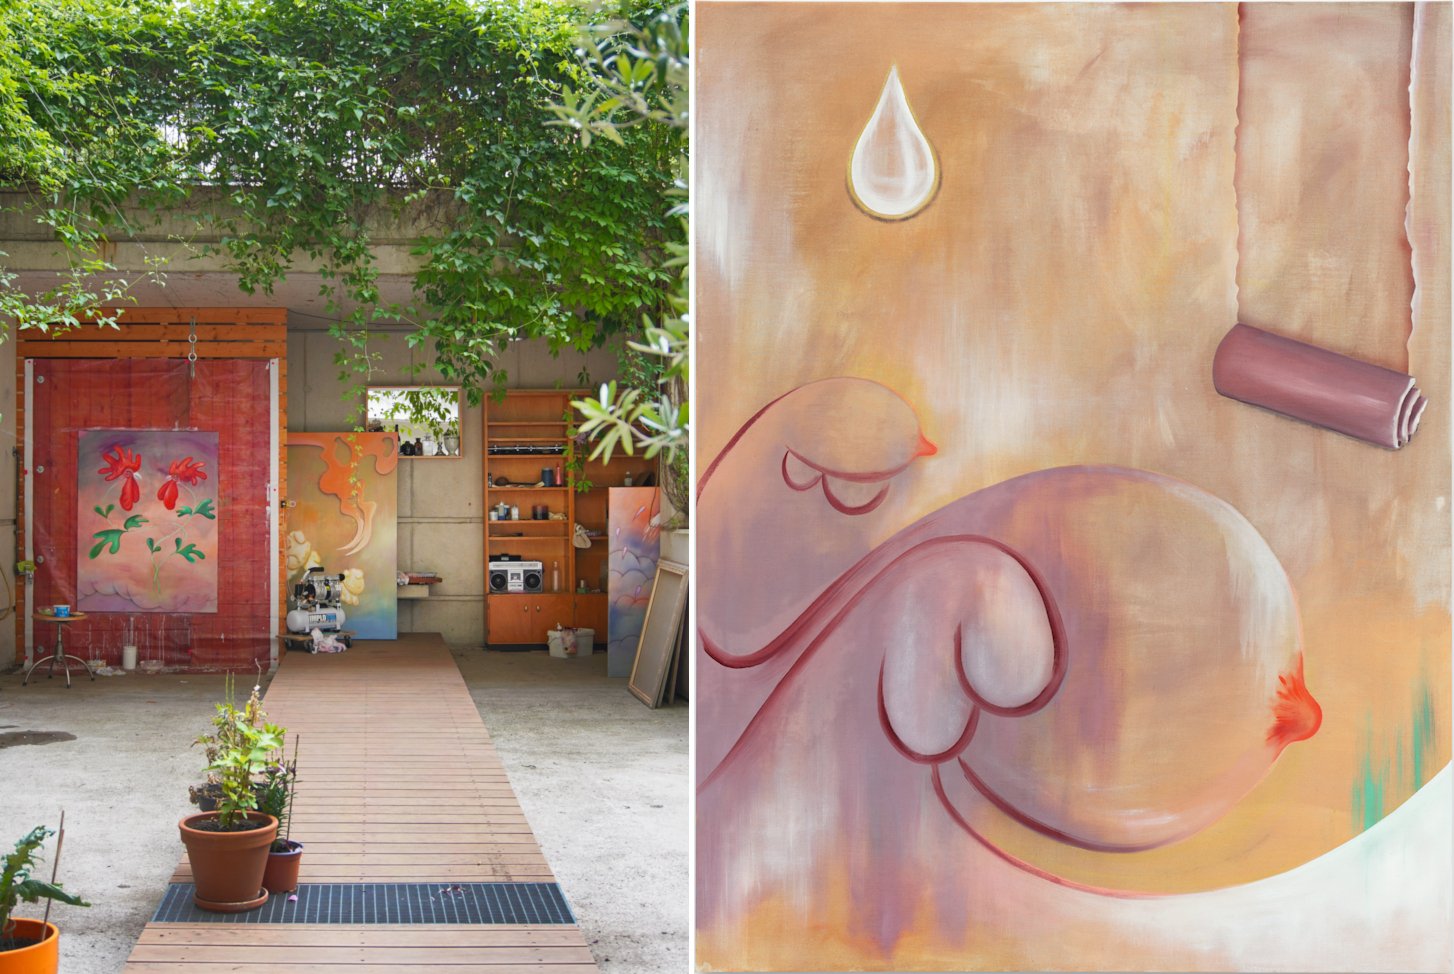 Links der Blick ins Outdoor-Studio von Jagoda Bednarsky, rechts eine Malerei in Pfirsich- und Beerentönen.